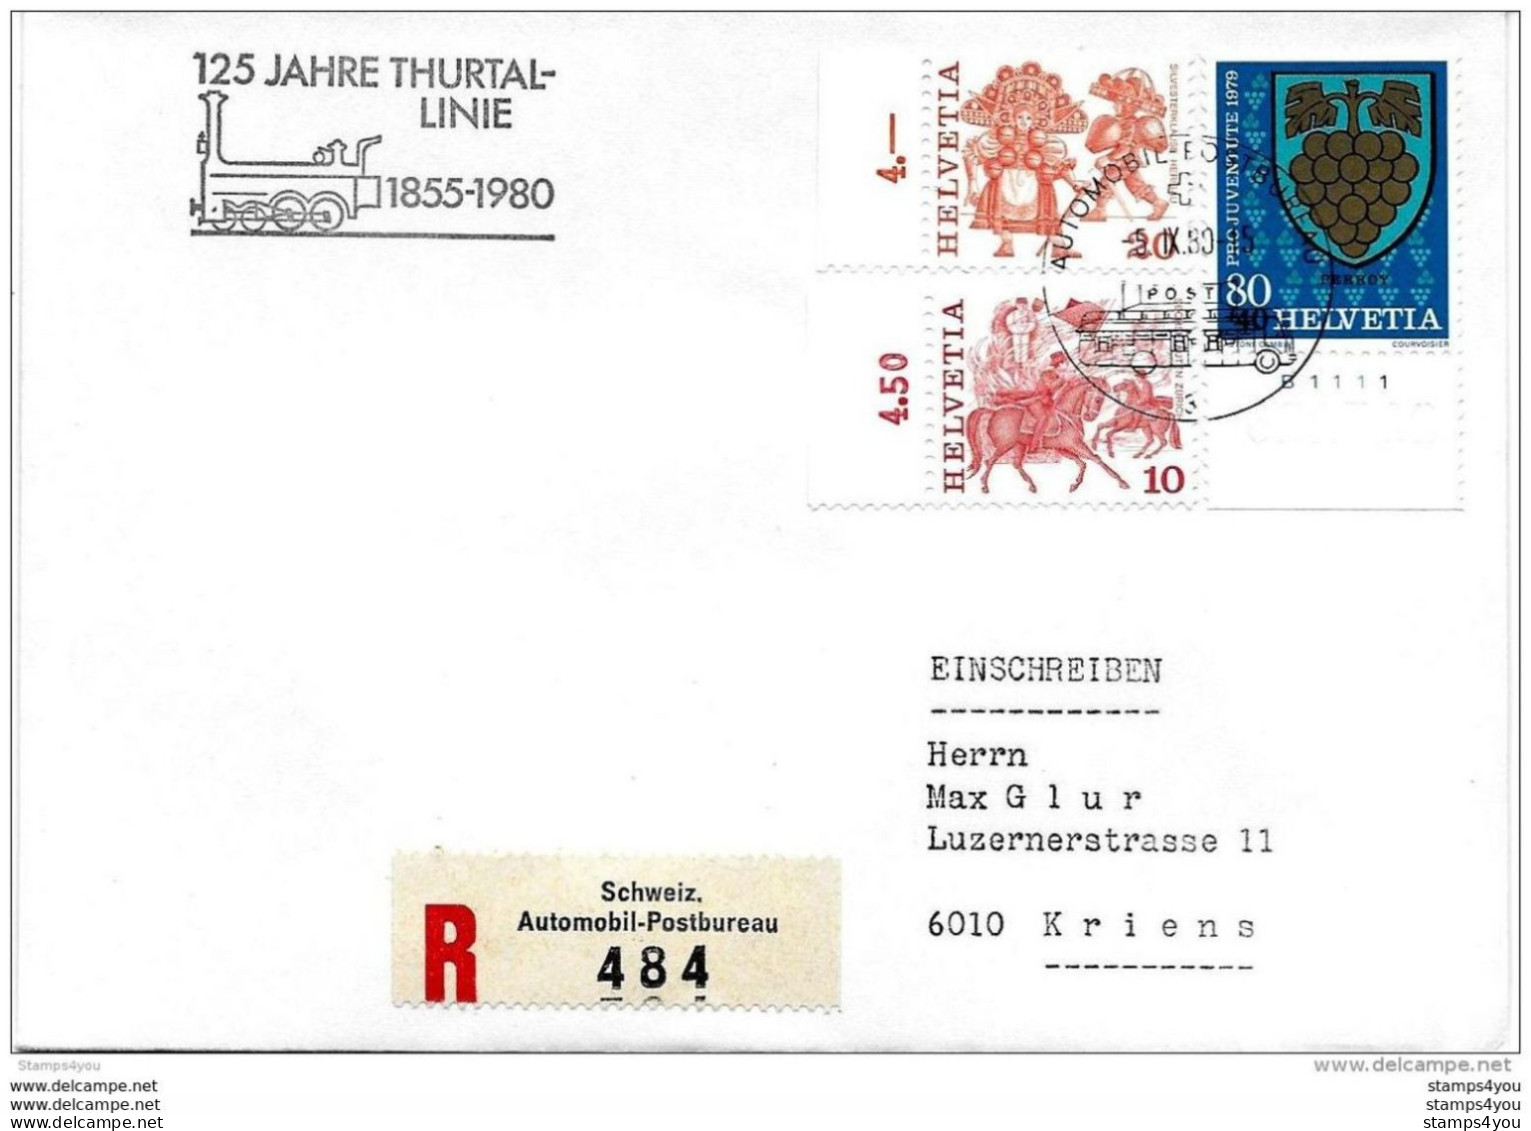 228 - 77 -  Enveloppe Suisse Recommandée Avec Oblit Spéciale "125 Jahre Thurtal-linie 1980" - Treni